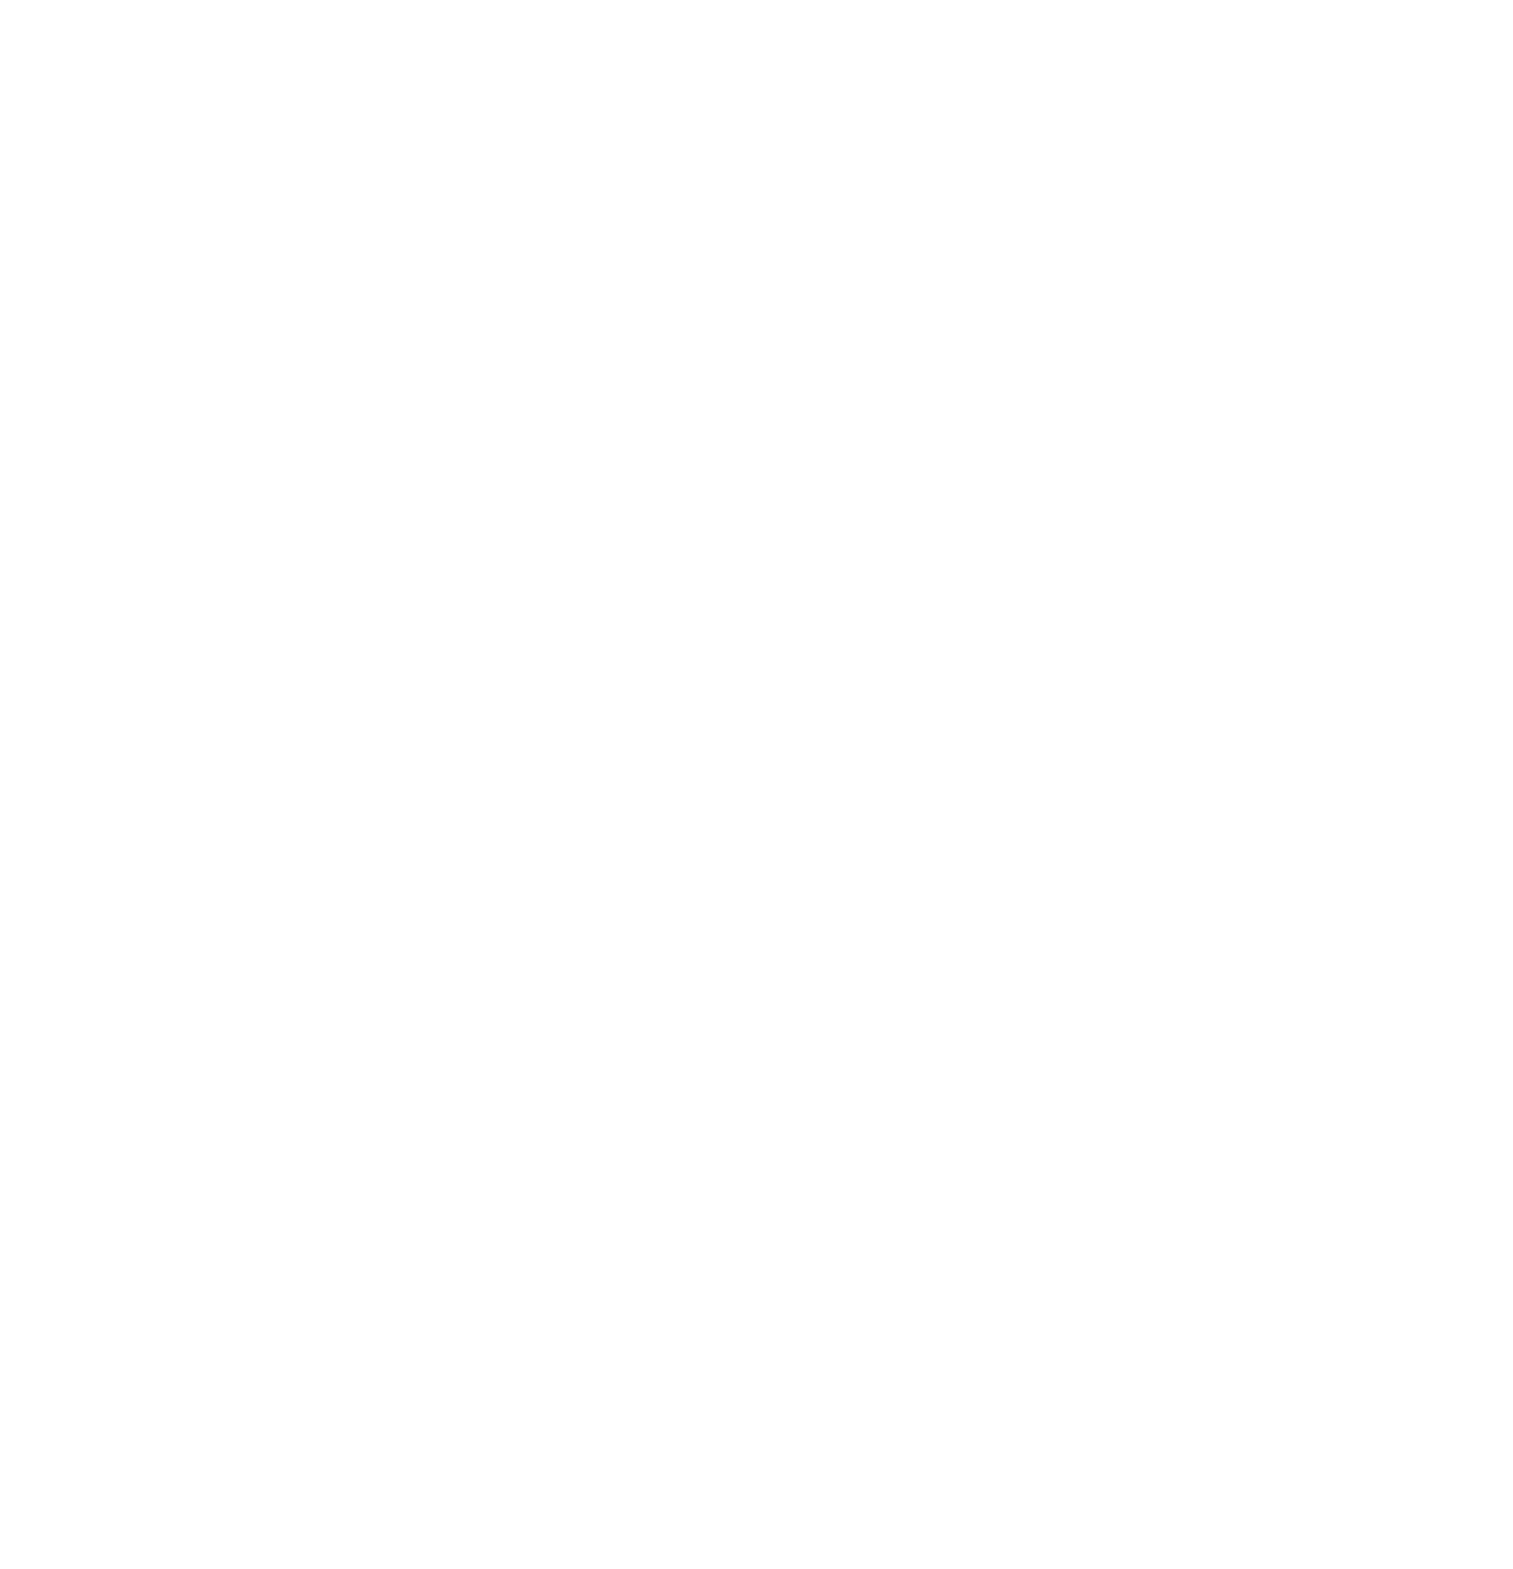 Xunlei logo pour fonds sombres (PNG transparent)